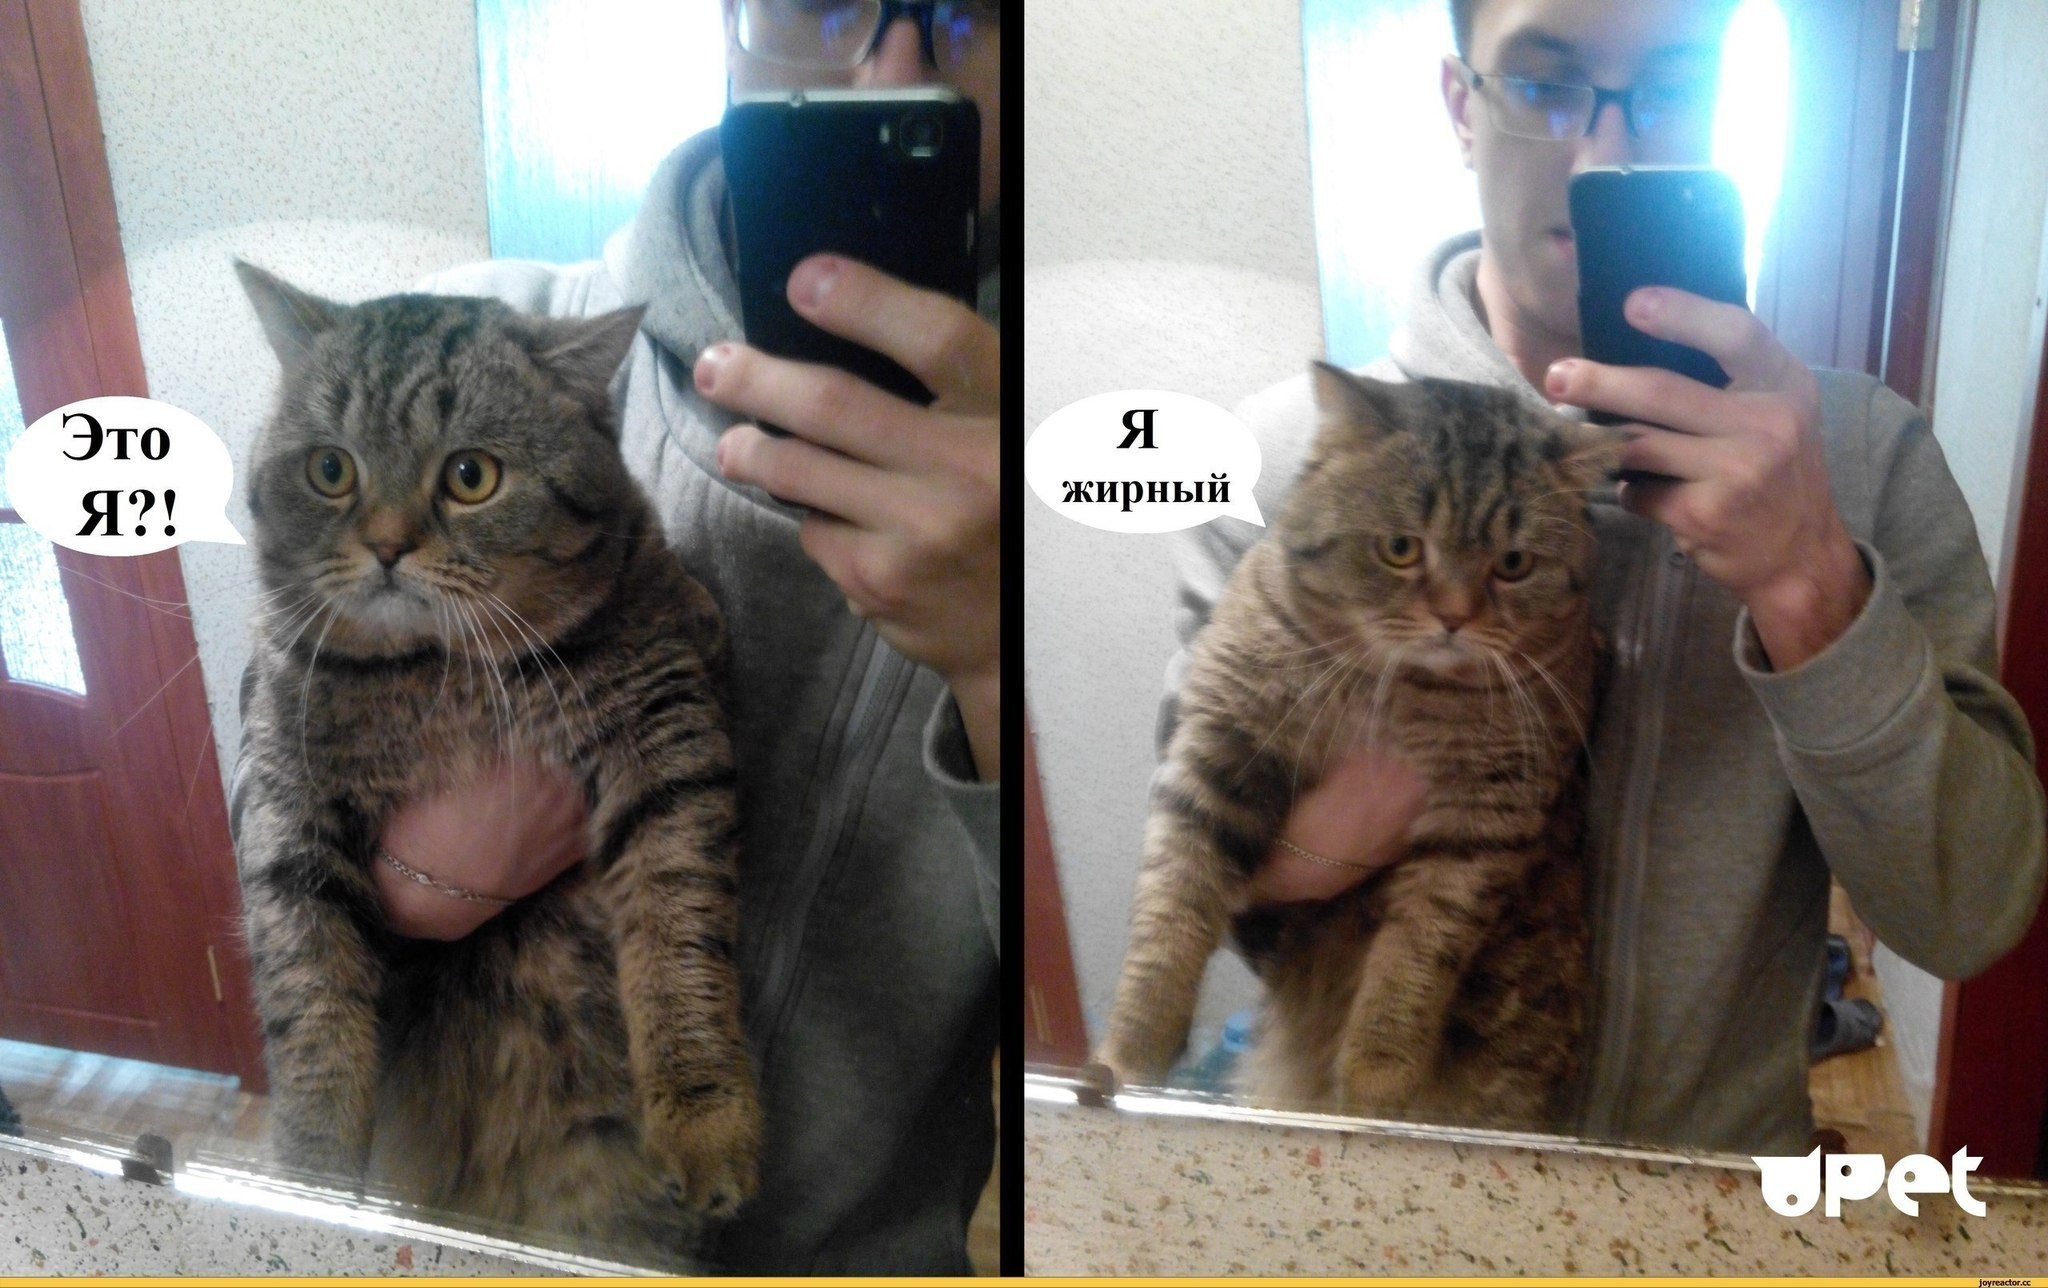 Блять конченая. Я жирный кот. Это я я жирный кот. Я толстый кот в зеркале. Зеркало "котик".